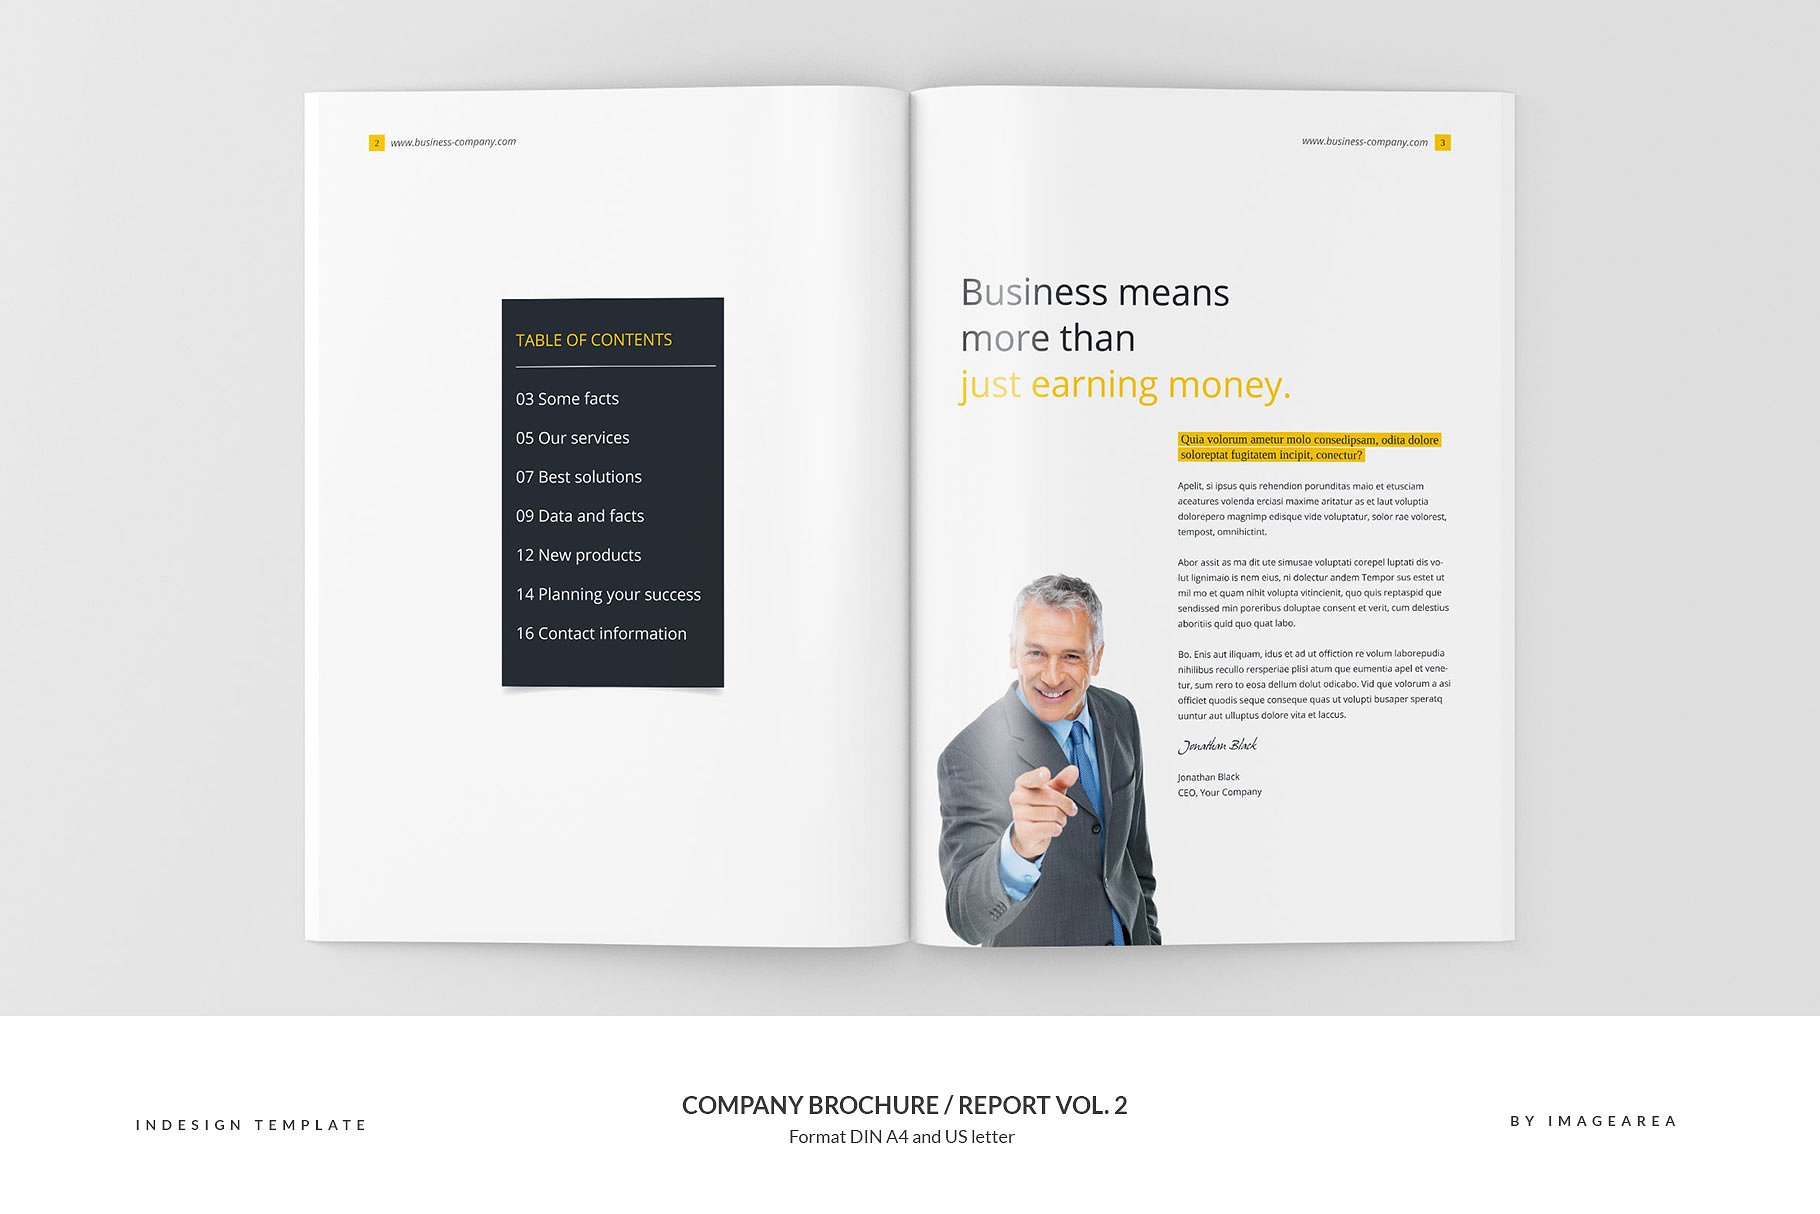 企业品牌宣传画册/企业年报设计模板v2 Company Brochure / Report Vol. 2插图(2)